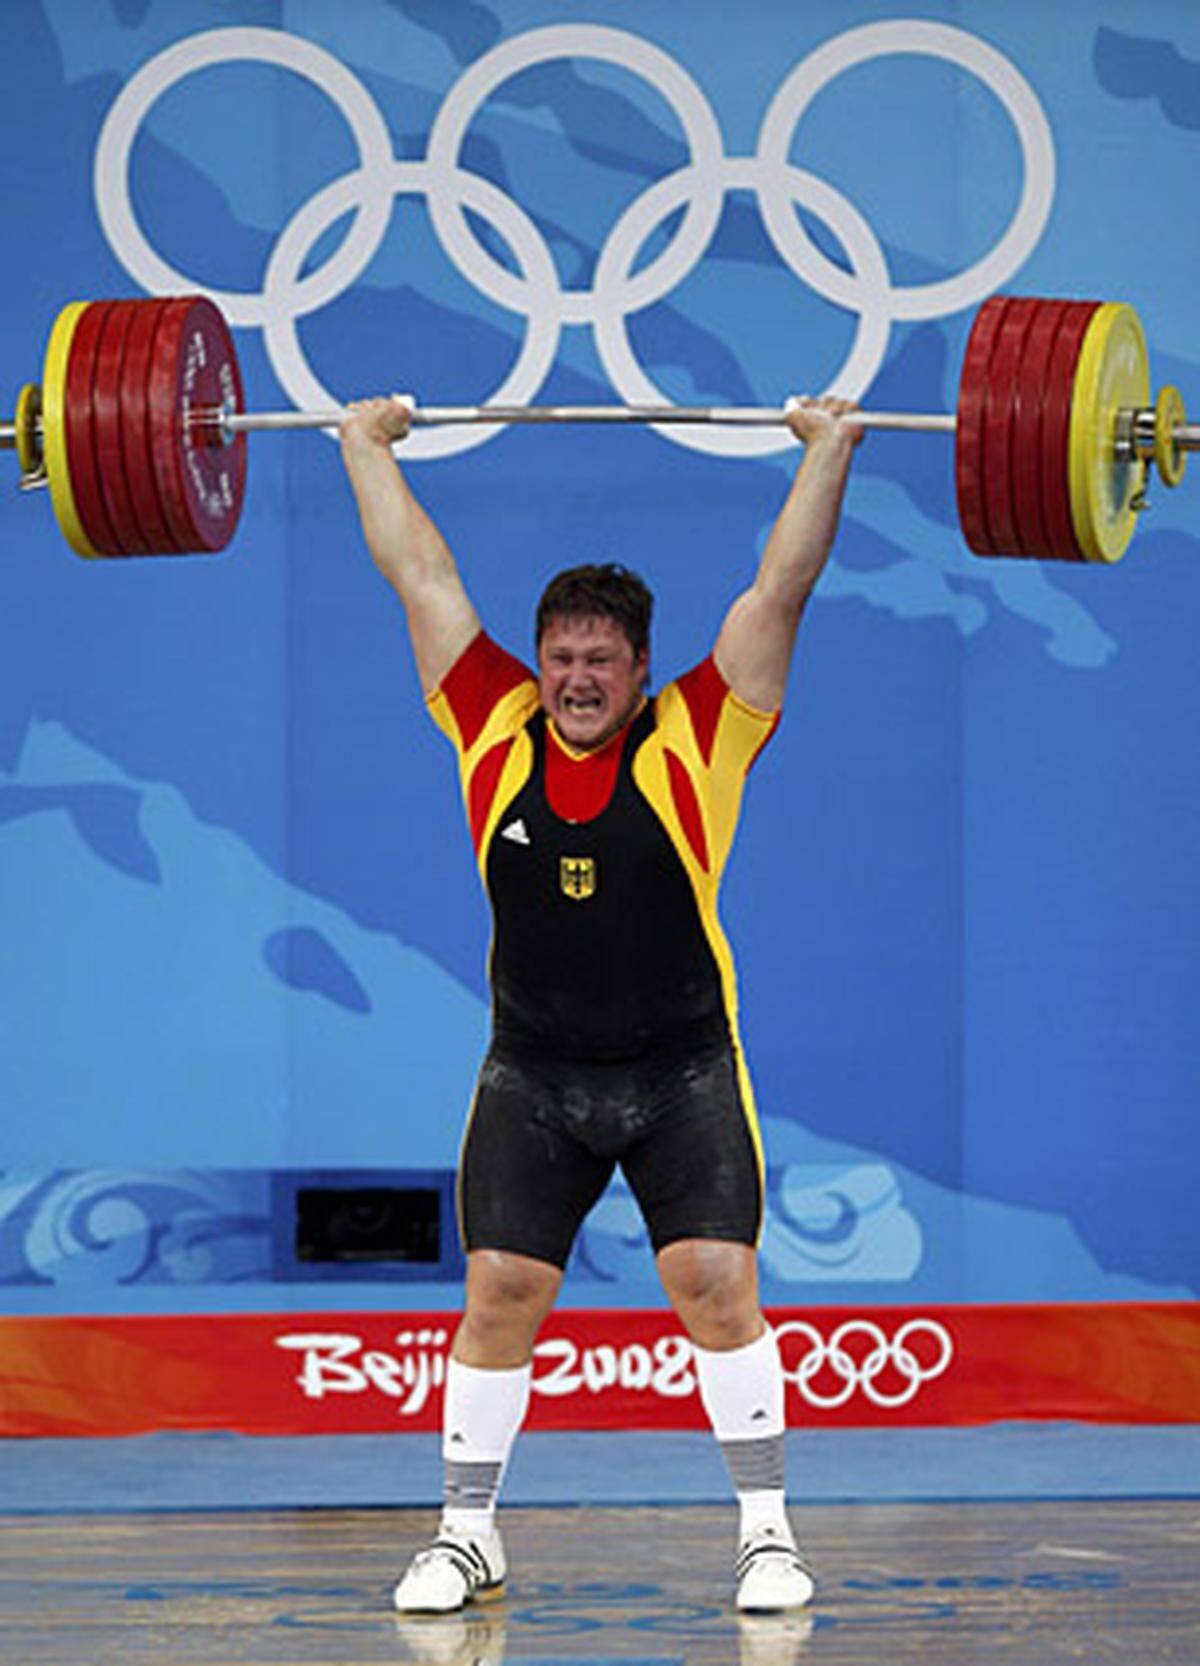 Mit einer Zweikampfleistung von 461 Kilogramm distanzierte der Neo-Deutsche den Russen Jewgenij Schigischew um ein Kilo und gewann Gold in der höchsten Klasse des Gewichthebens.